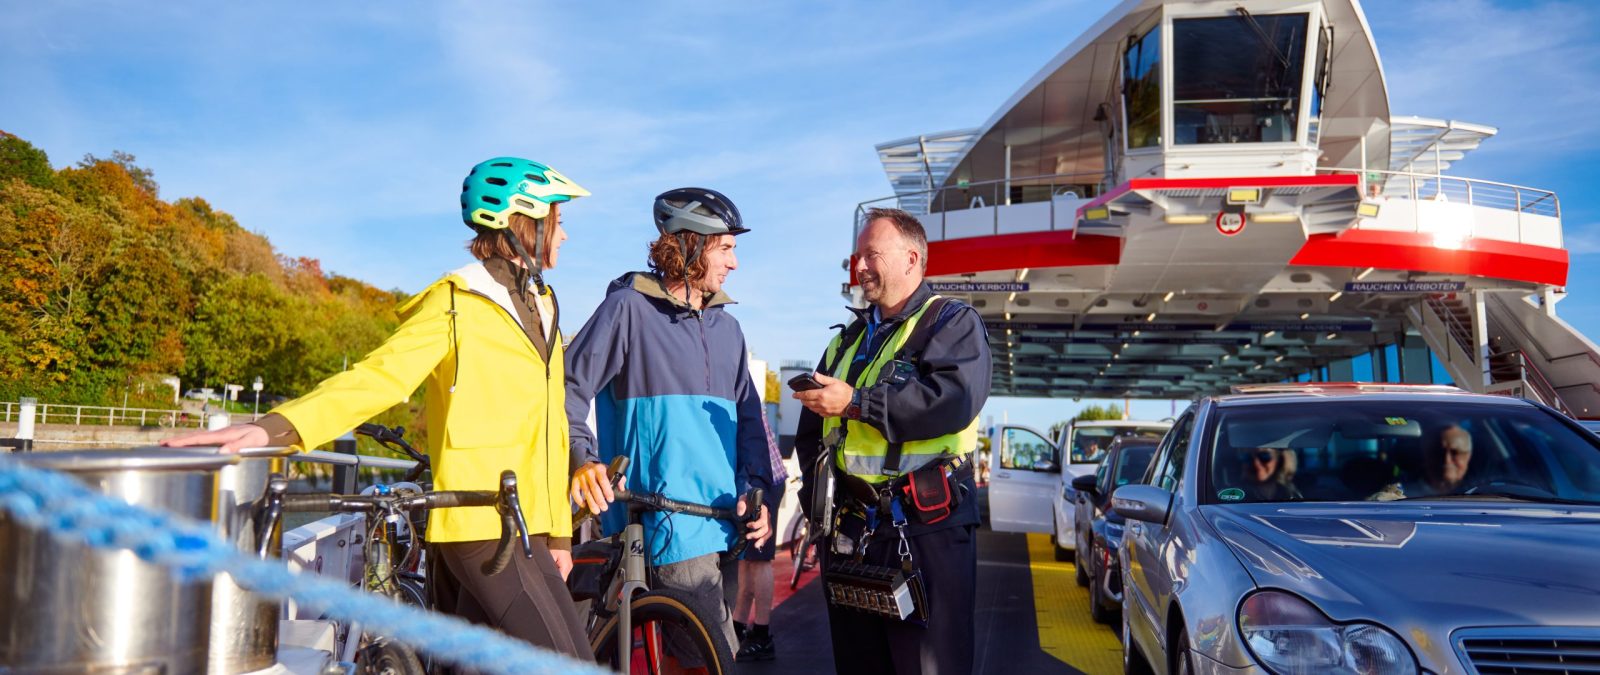 Zwei Personen mit Fahrrädern unterhalten sich mit einem Kassiermatrosen auf einem Fährschiff.